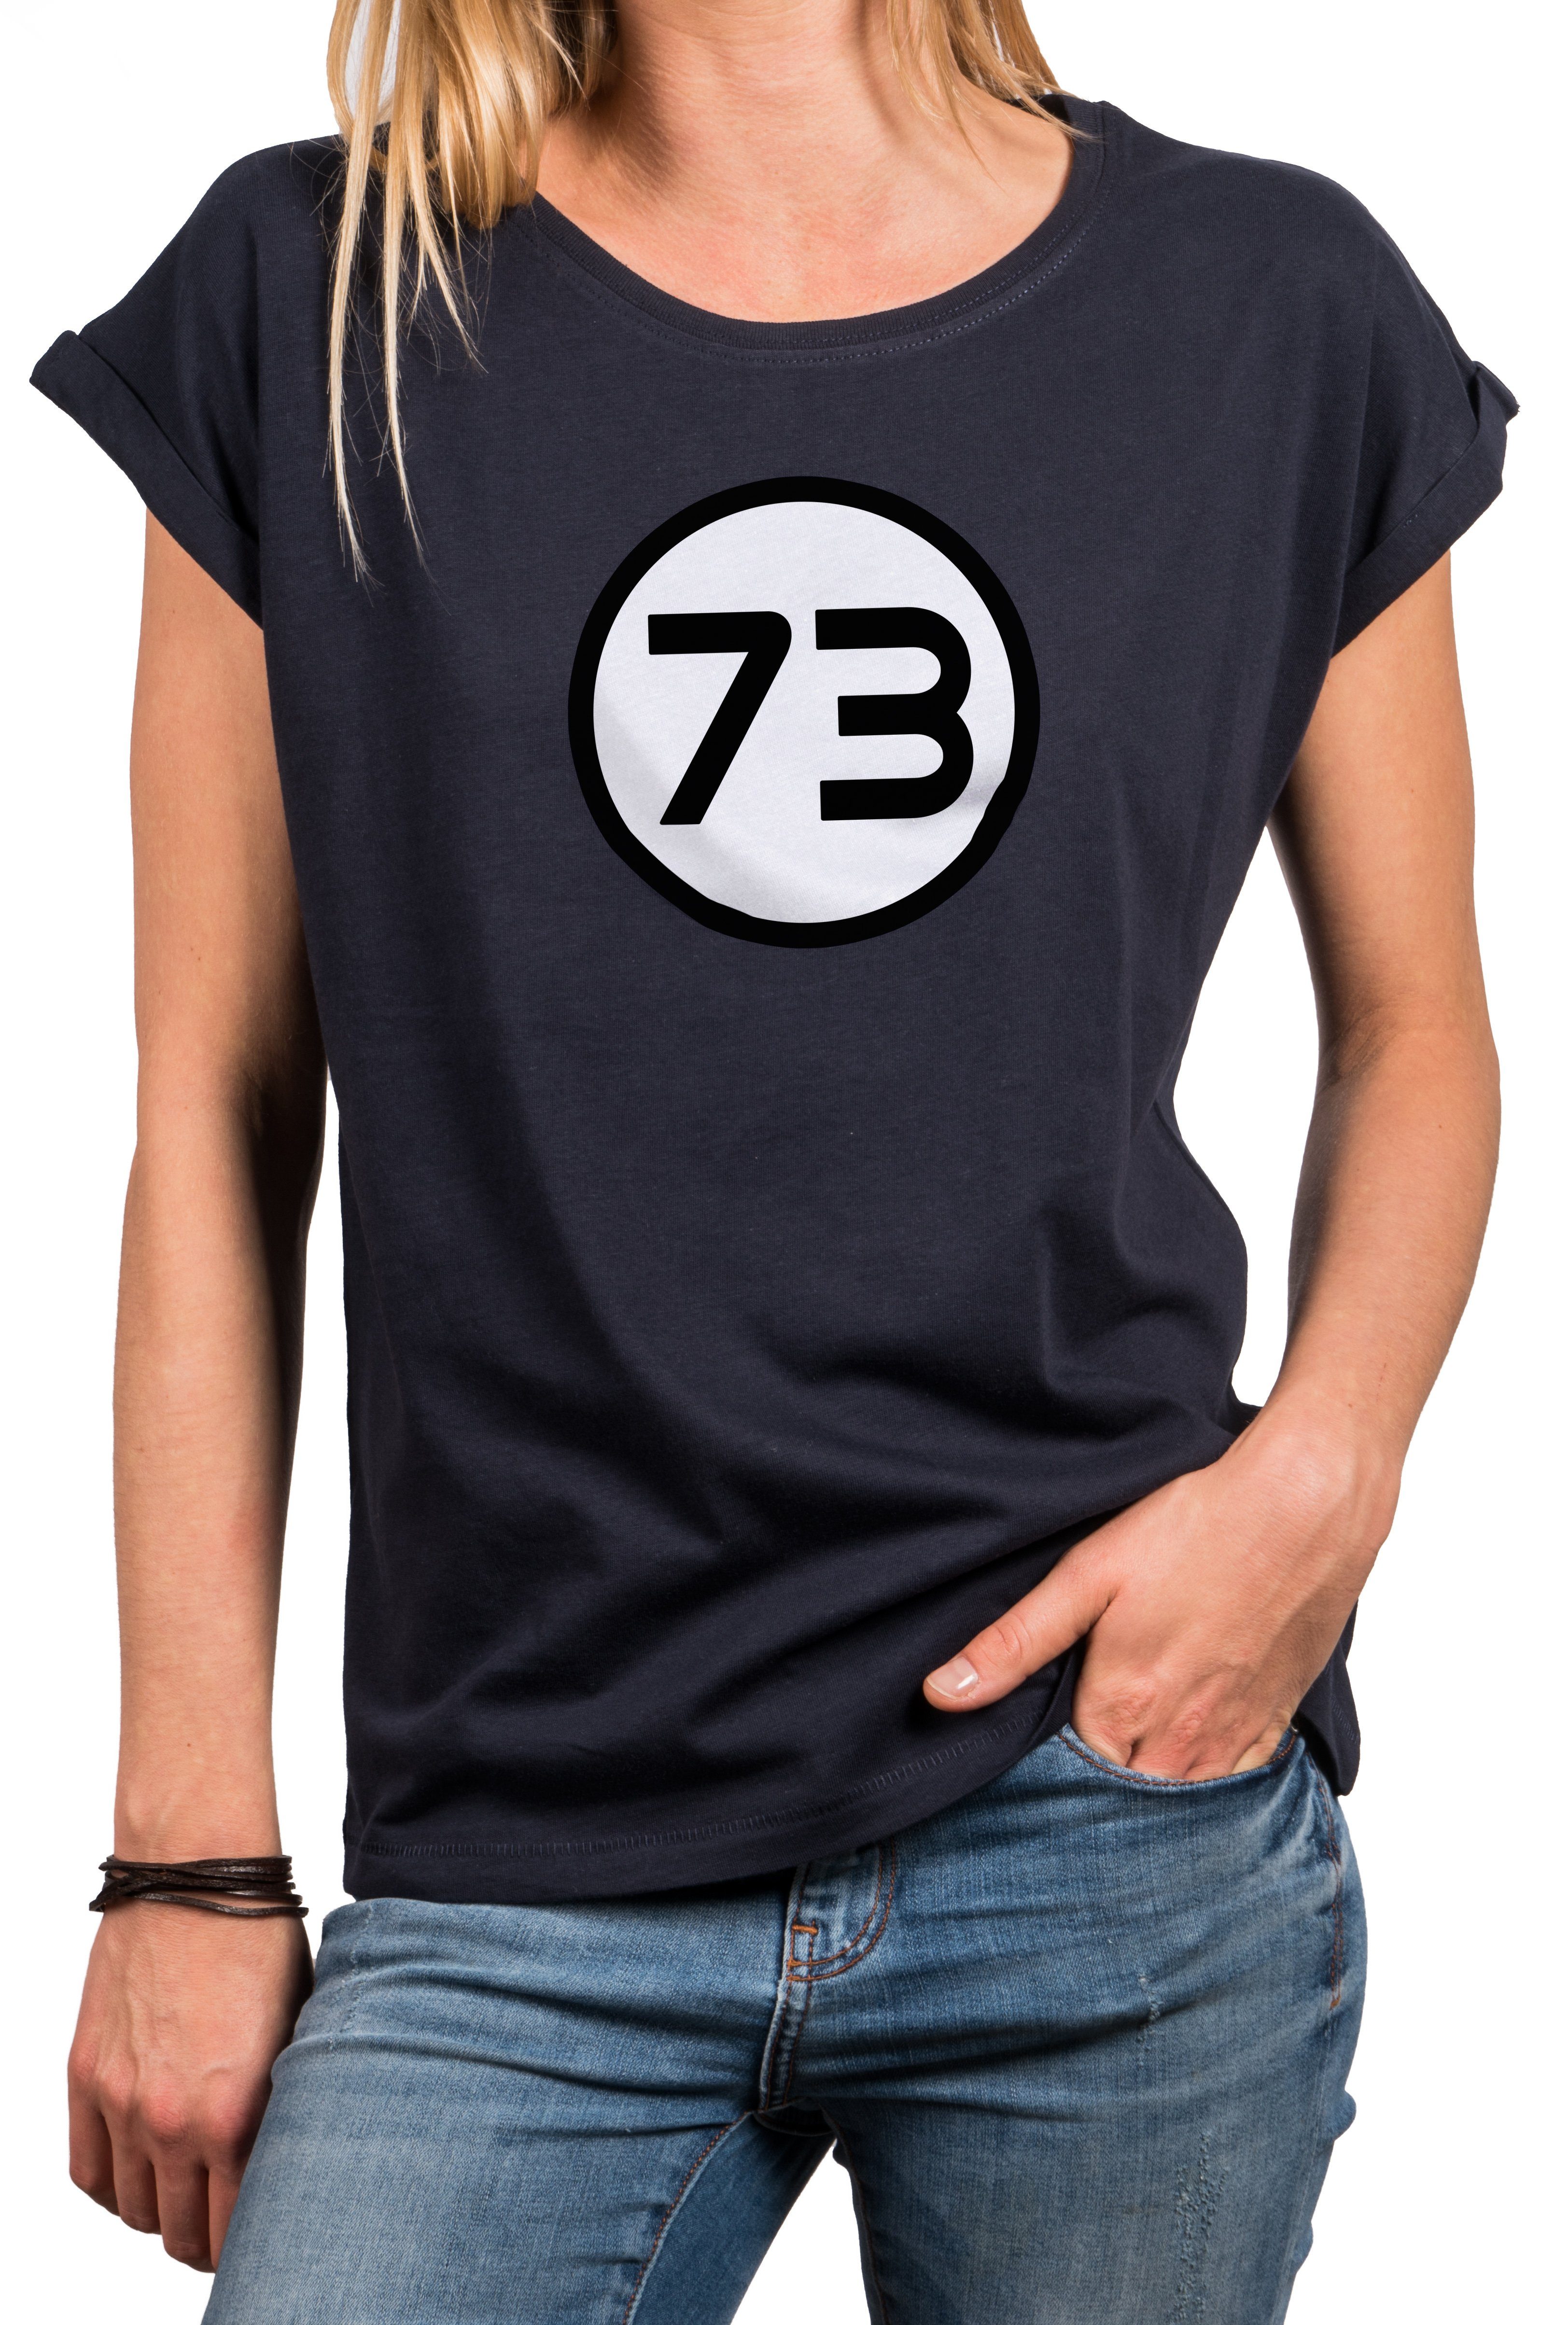 Print-Shirt Druck, MAKAYA 73 Mathematiker mit Big Magische Sommer Aufdruck Sheldon Baumwolle, Top Zahl große Größen Damen aus